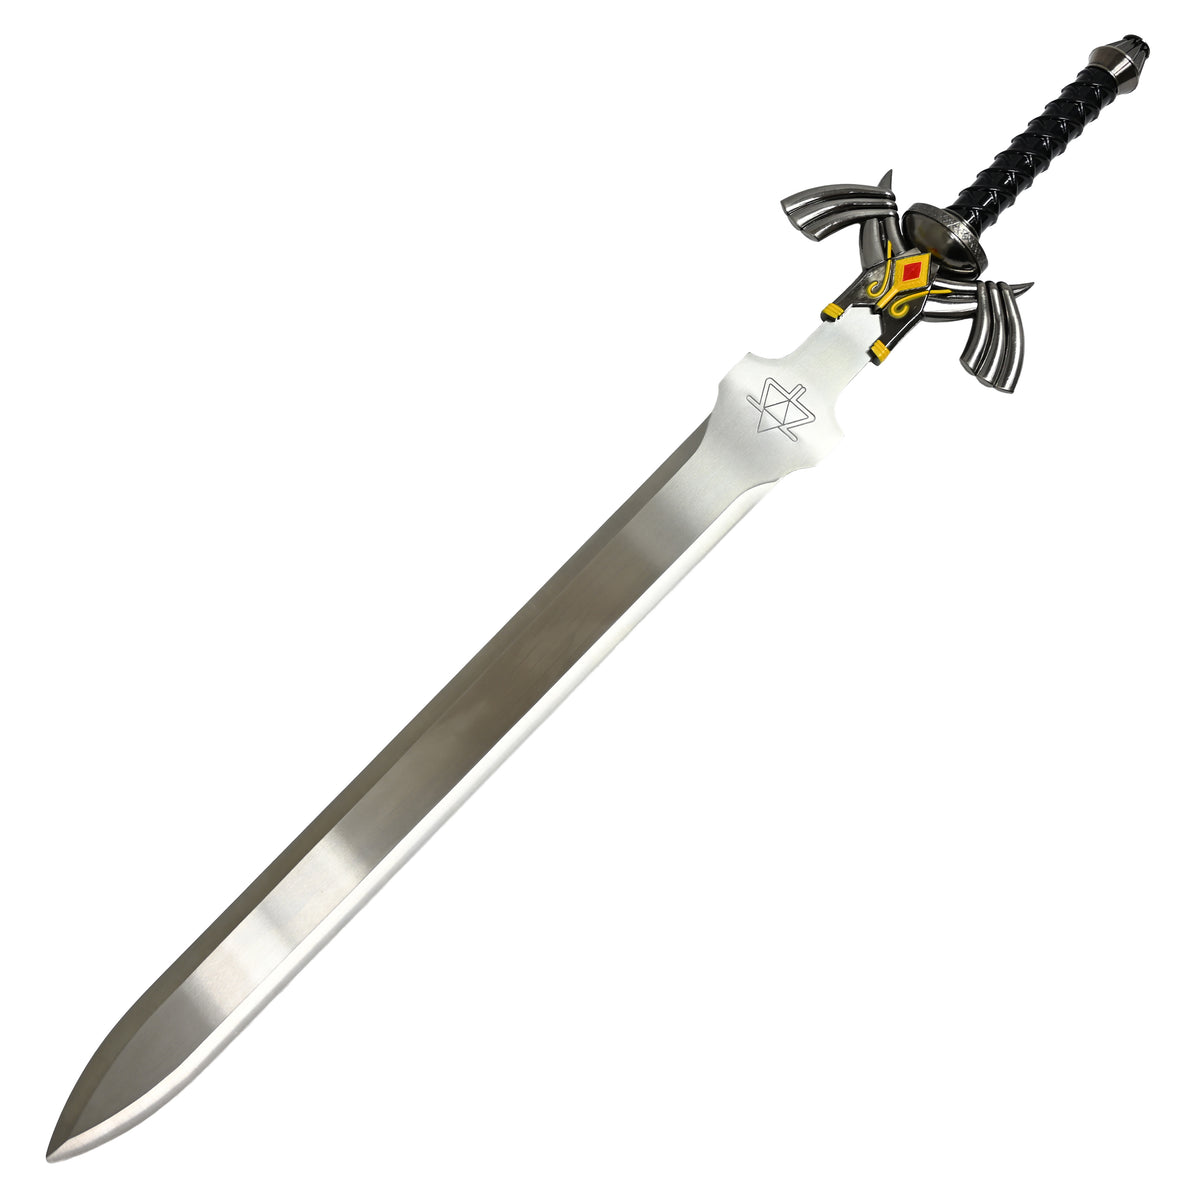 Dark Master Sword